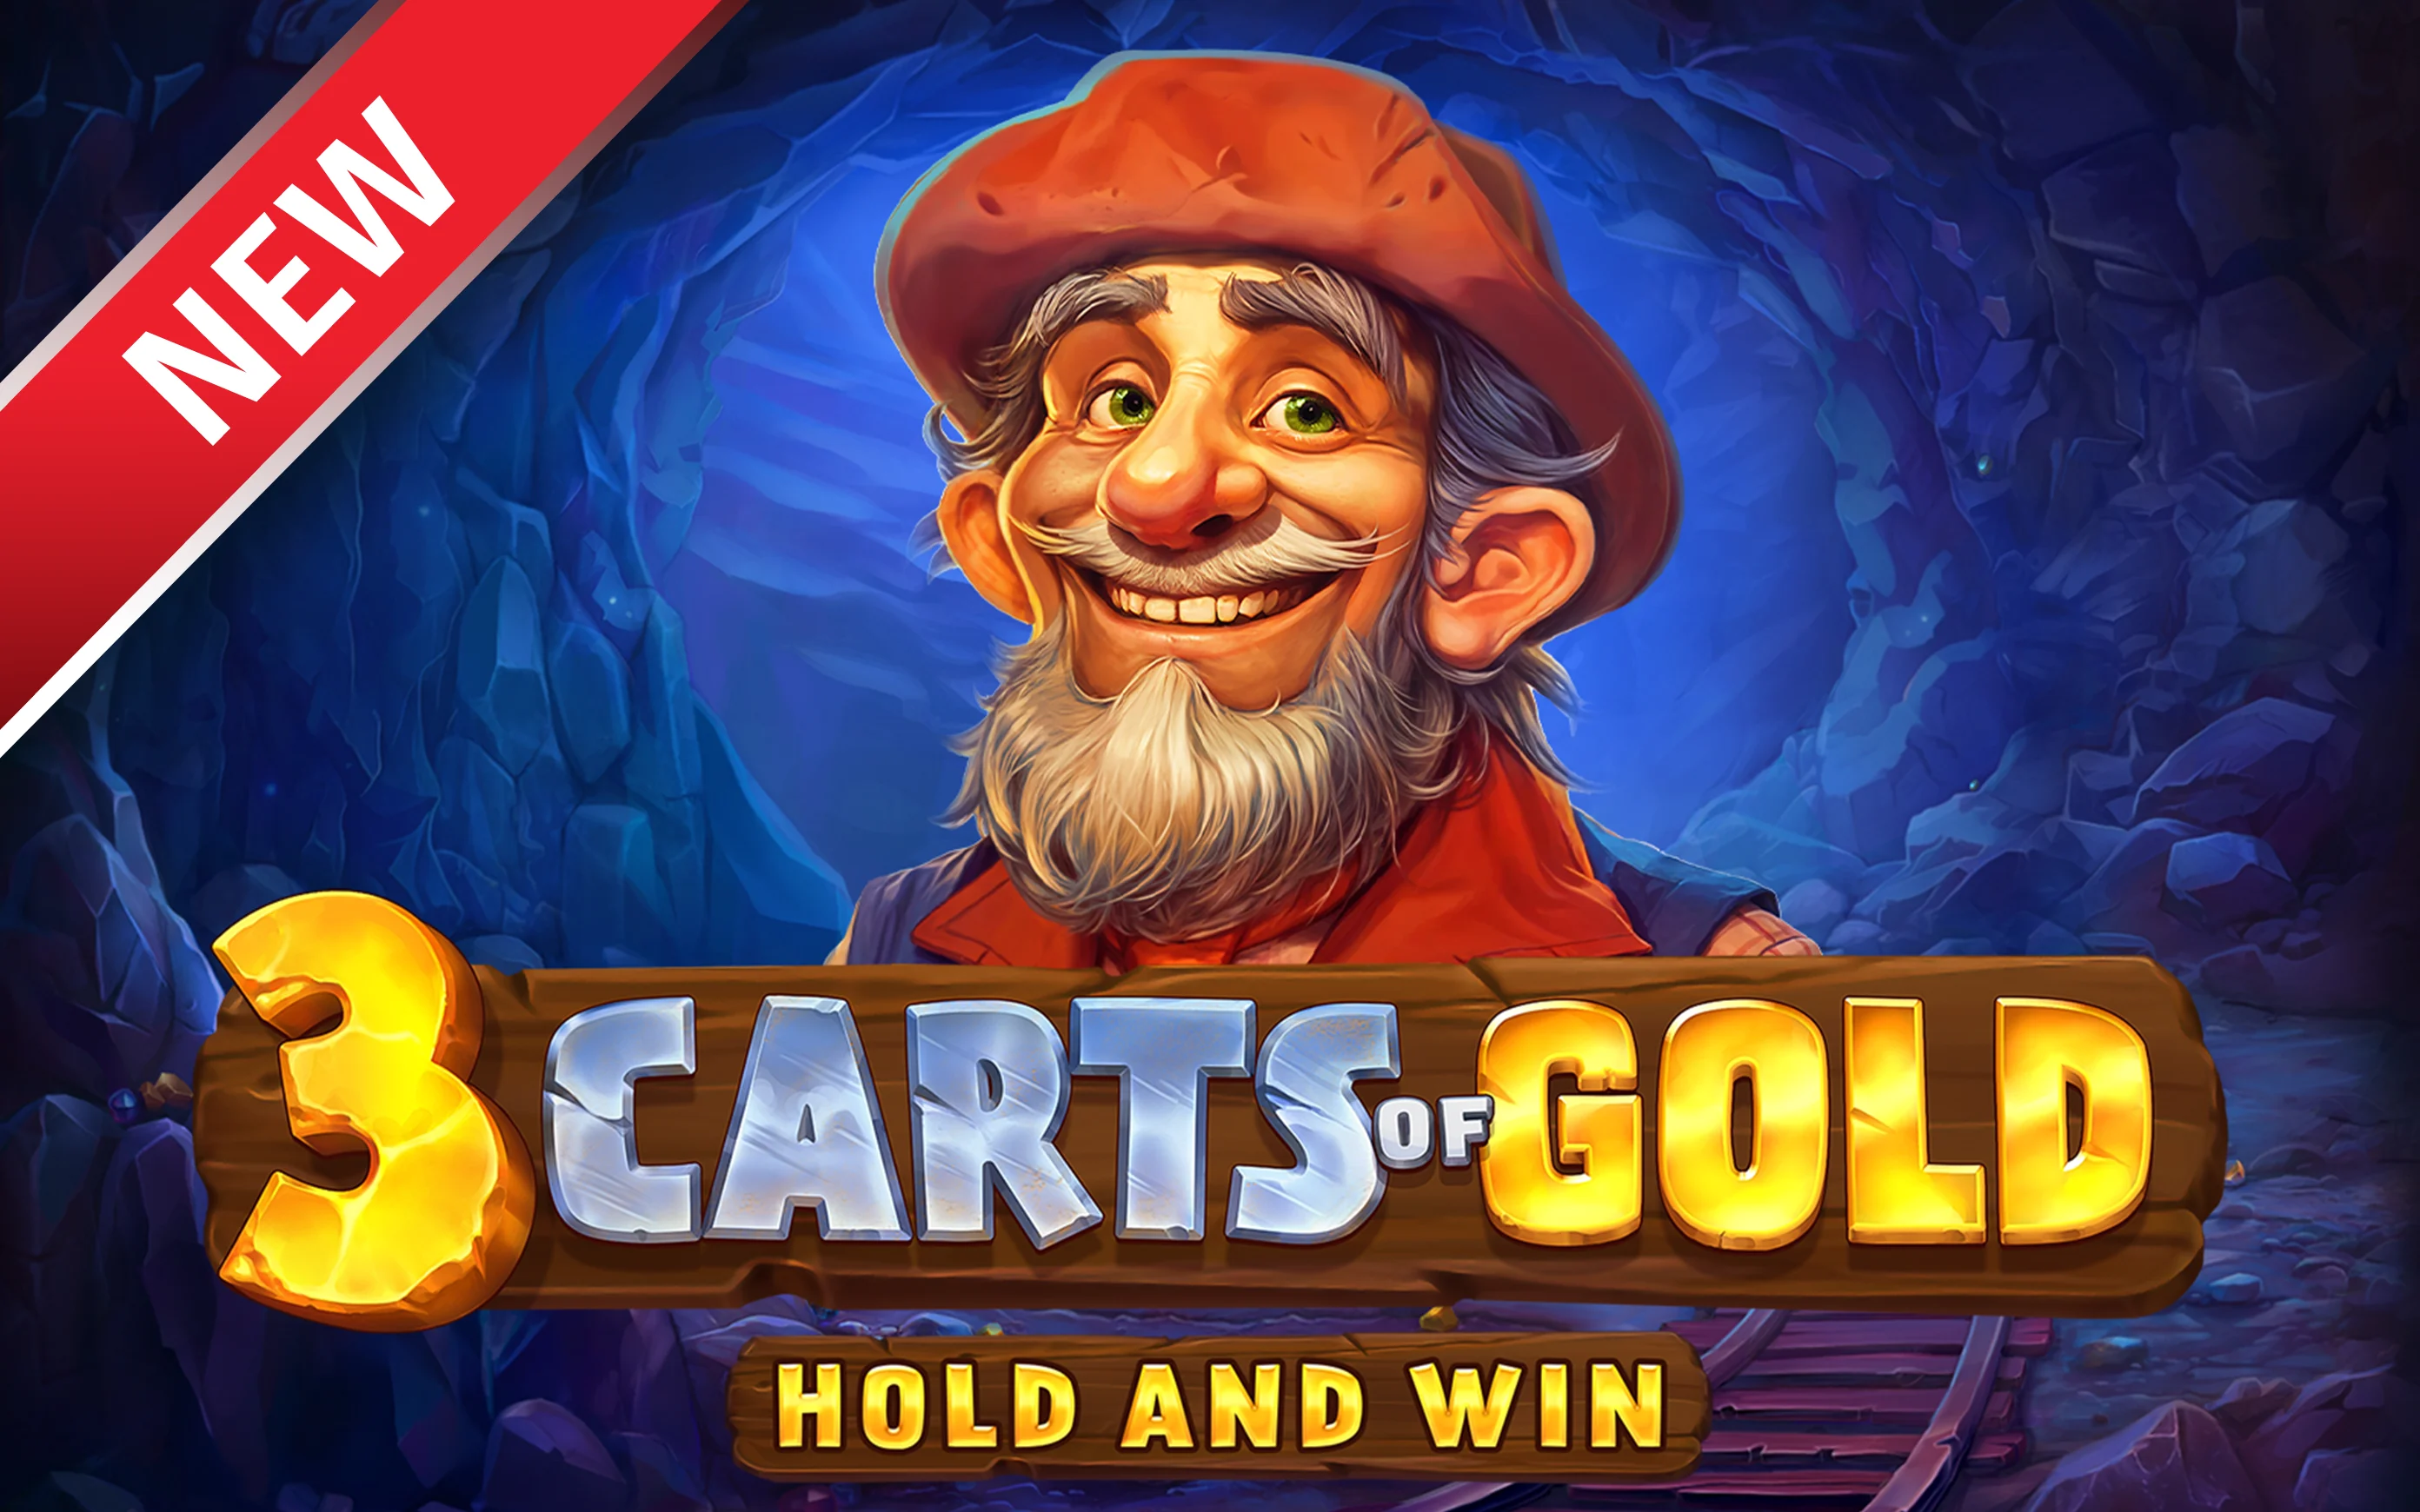 Spielen Sie 3 Carts of Gold: Hold and Win auf Starcasino.be-Online-Casino